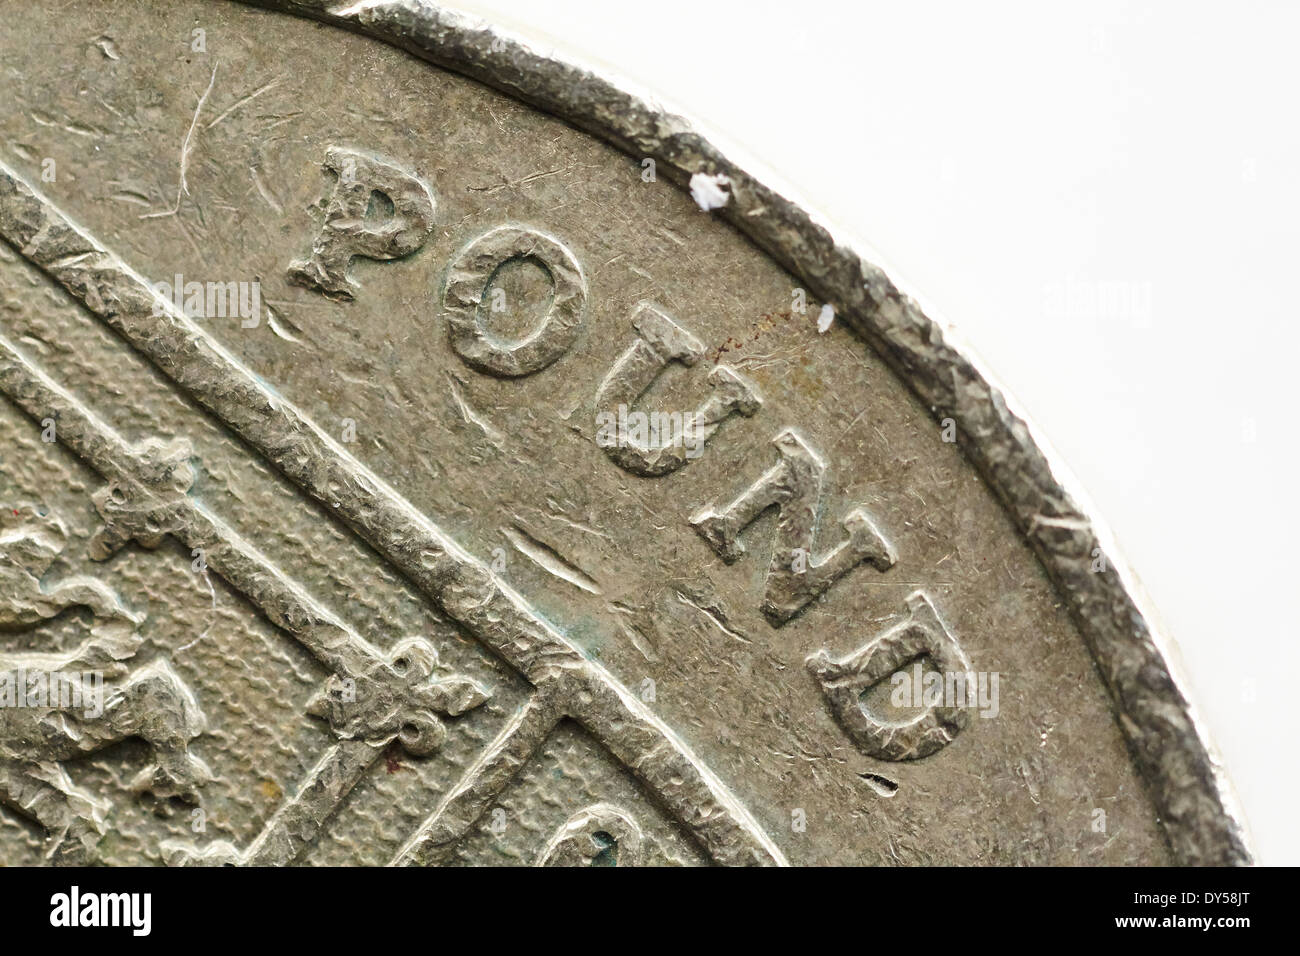 Pound coin, closeup detail. Stock Photo